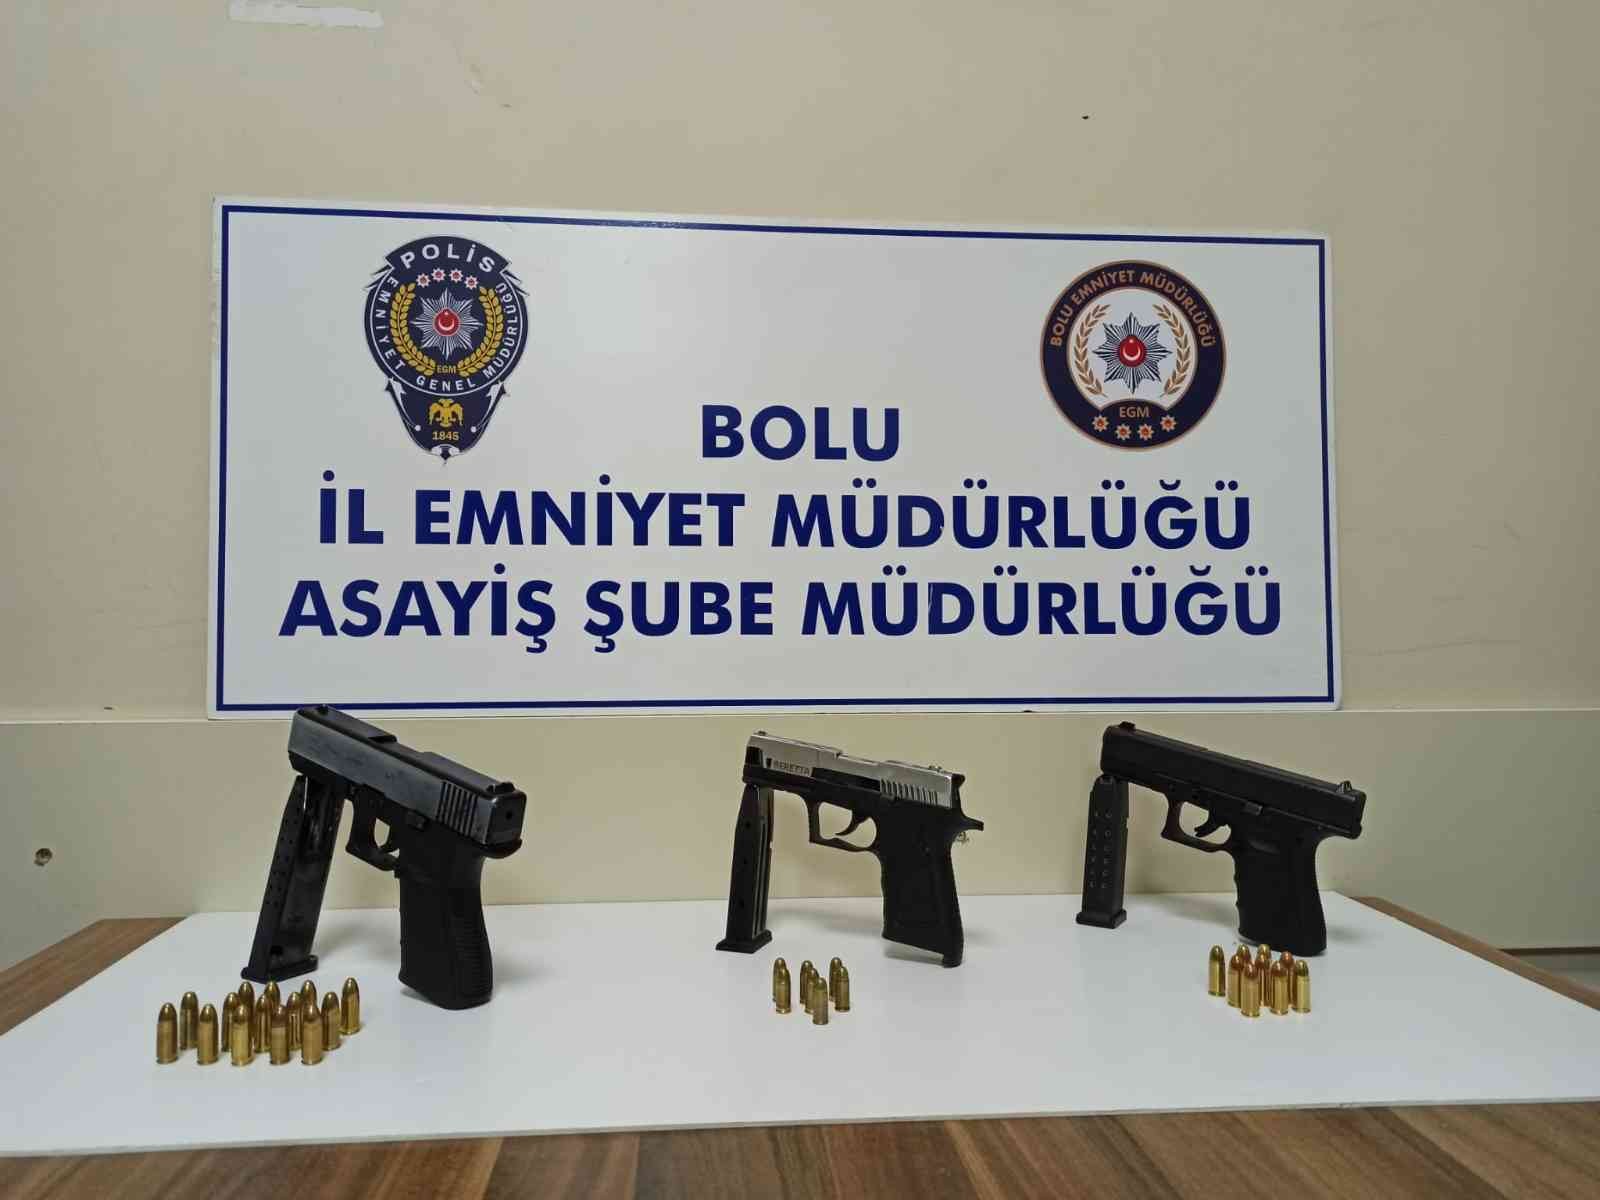 Huzur 14 uygulamasında 3 silah yakalandı #bolu